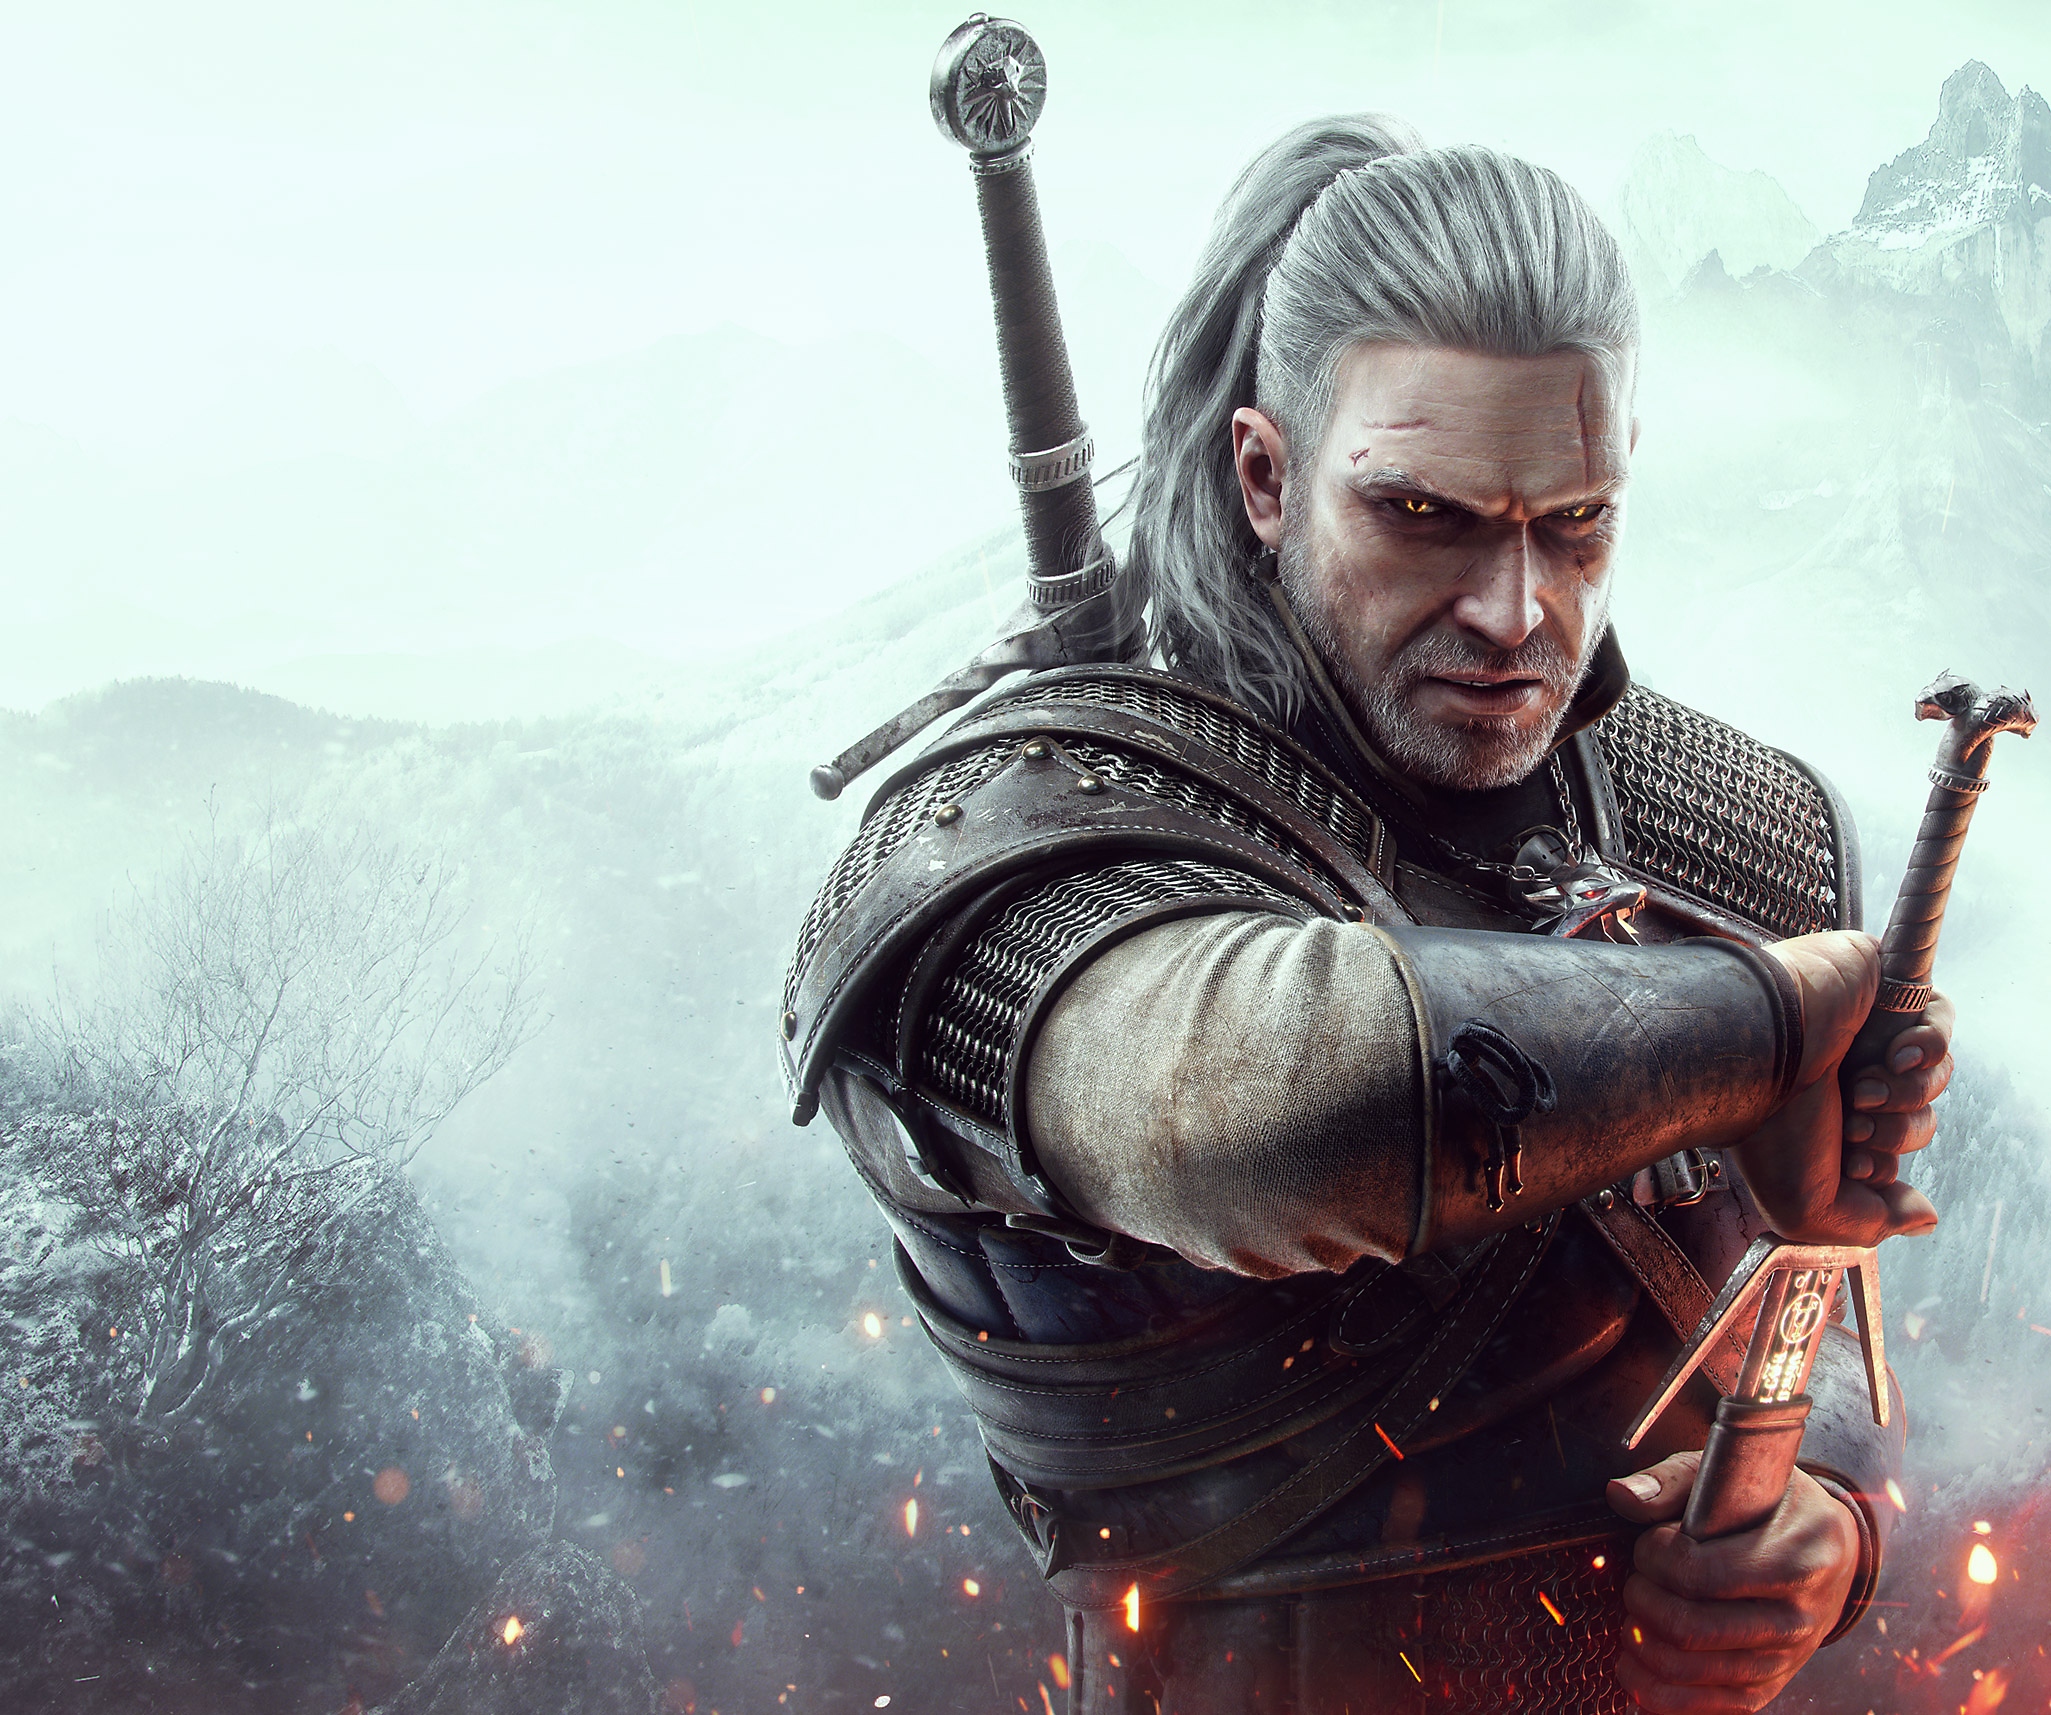 The Witcher 3 – bild på huvudkaraktären Geralt of Rivia som drar sitt svärd.